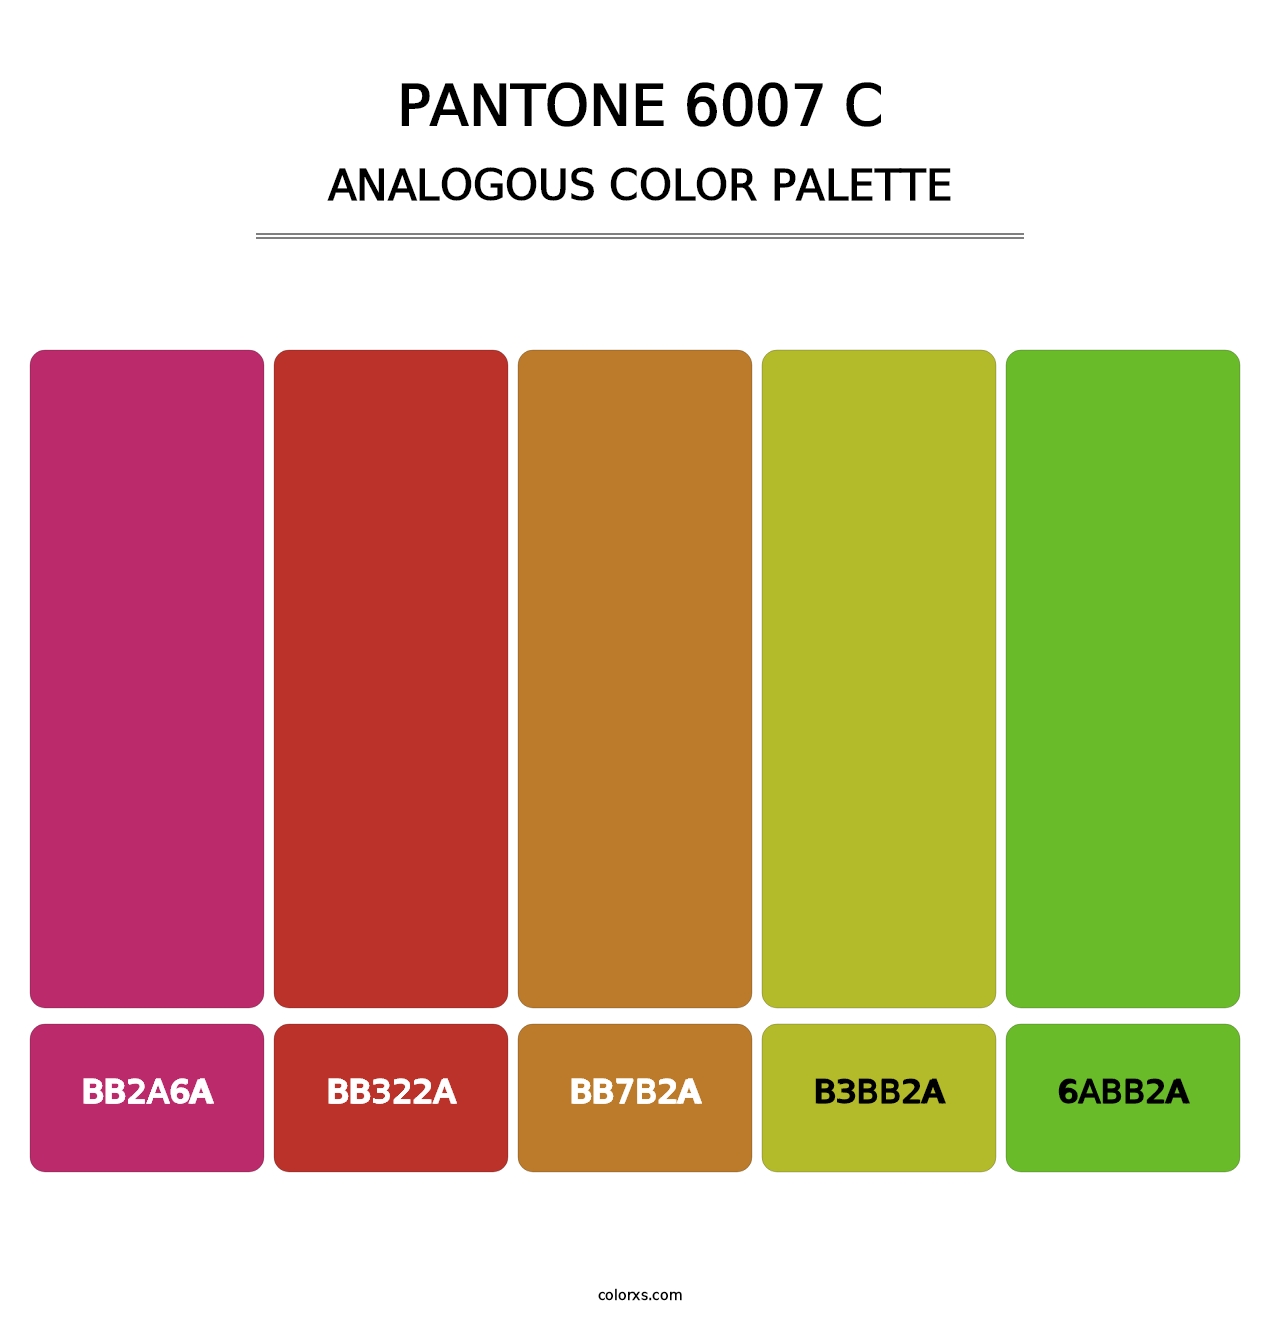 PANTONE 6007 C - Analogous Color Palette